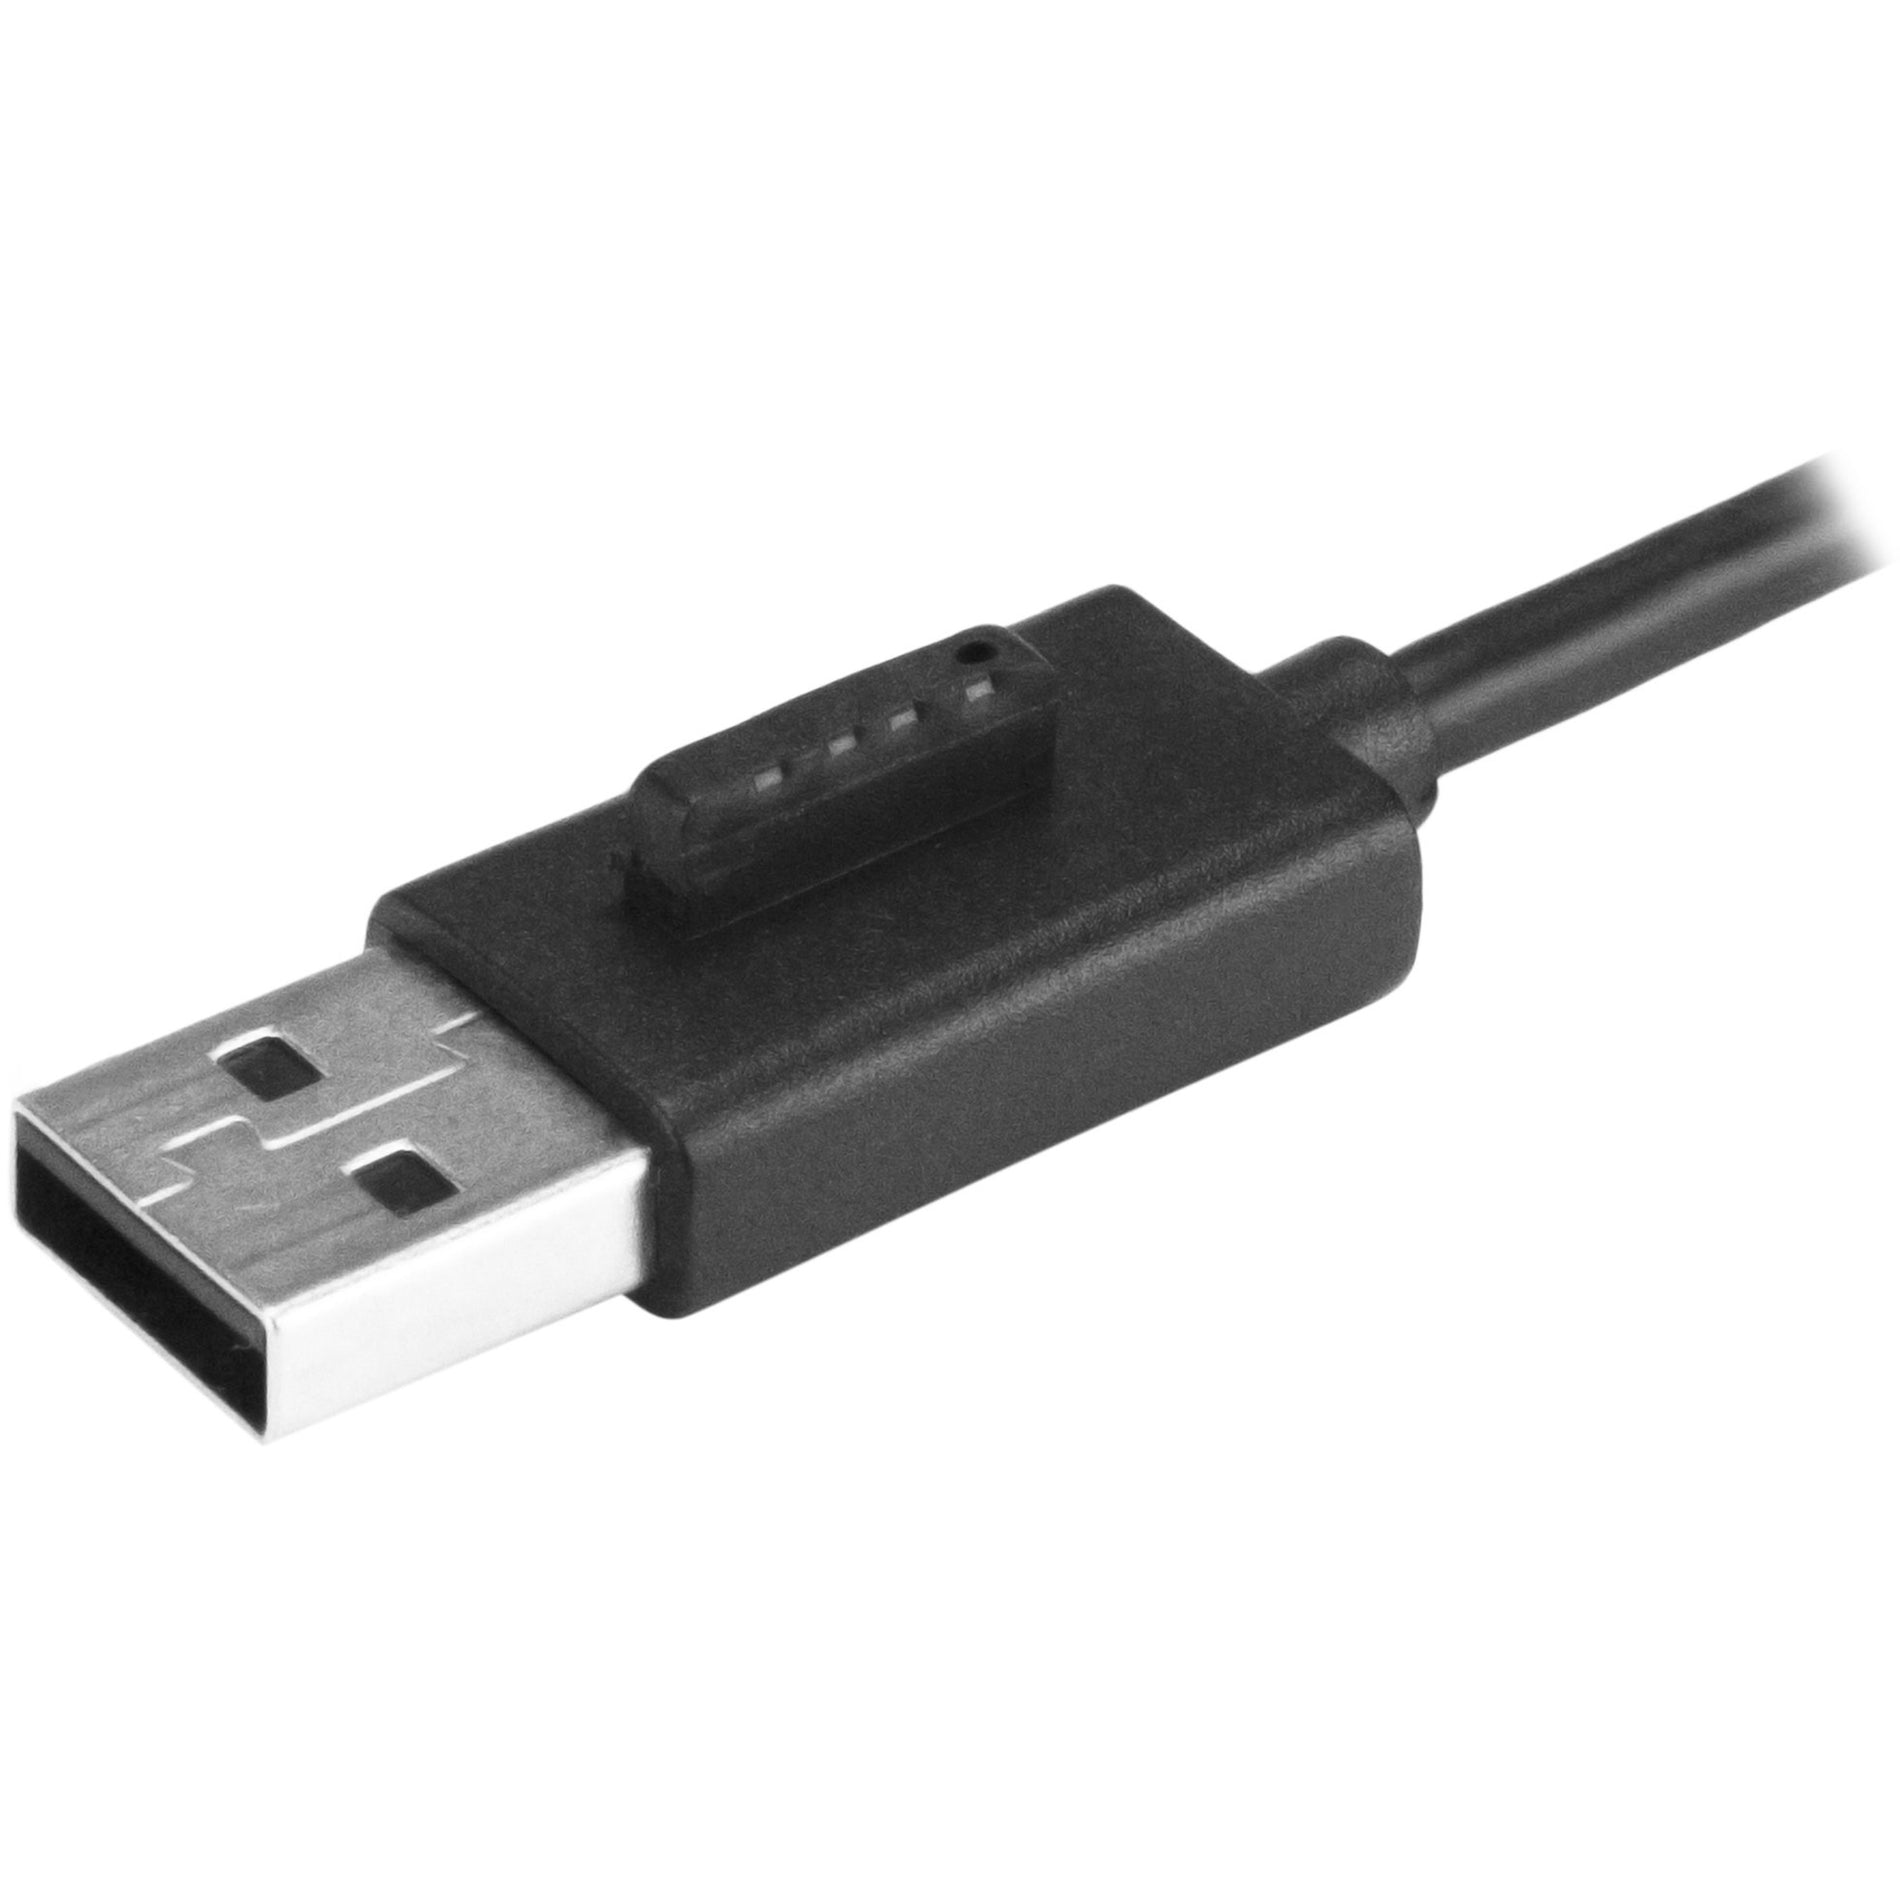 星际科技 ST4200MINI2 4口便携式USB 2.0集线器带内置电缆，紧凑型迷你USB集线器 品牌名称：星际科技